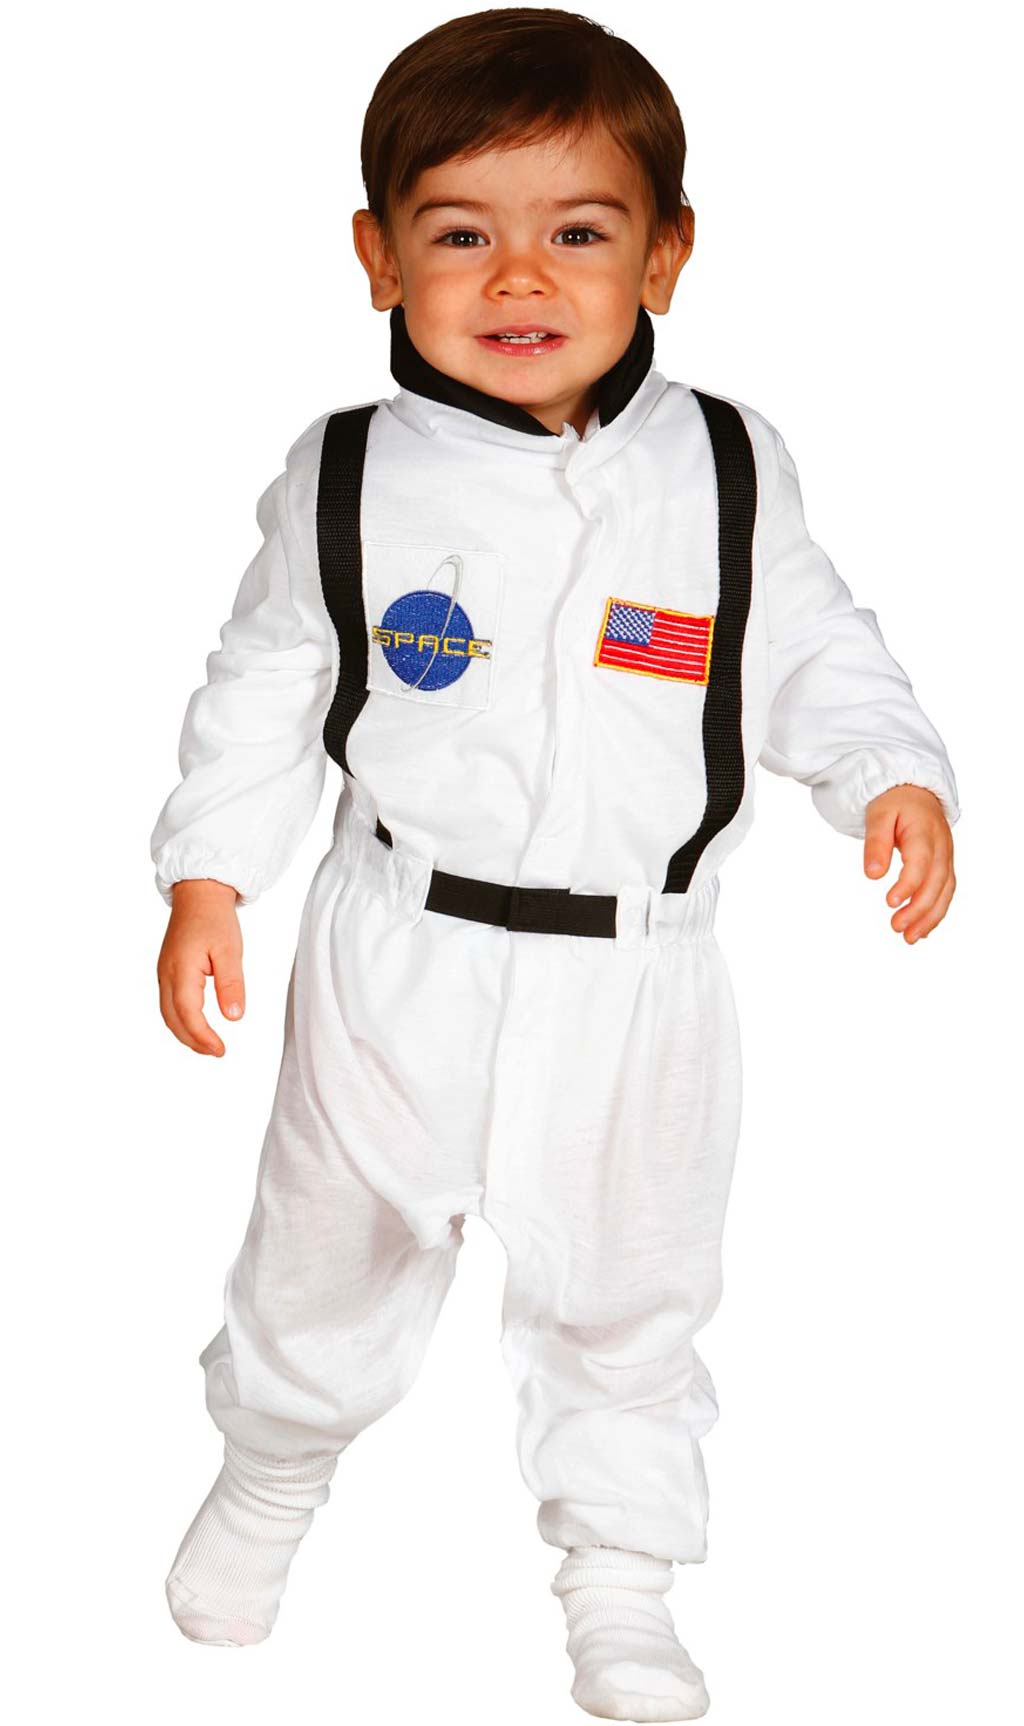 Disfraces de Astronauta para hombre, mujer y niños ▷ Entrega en 24h